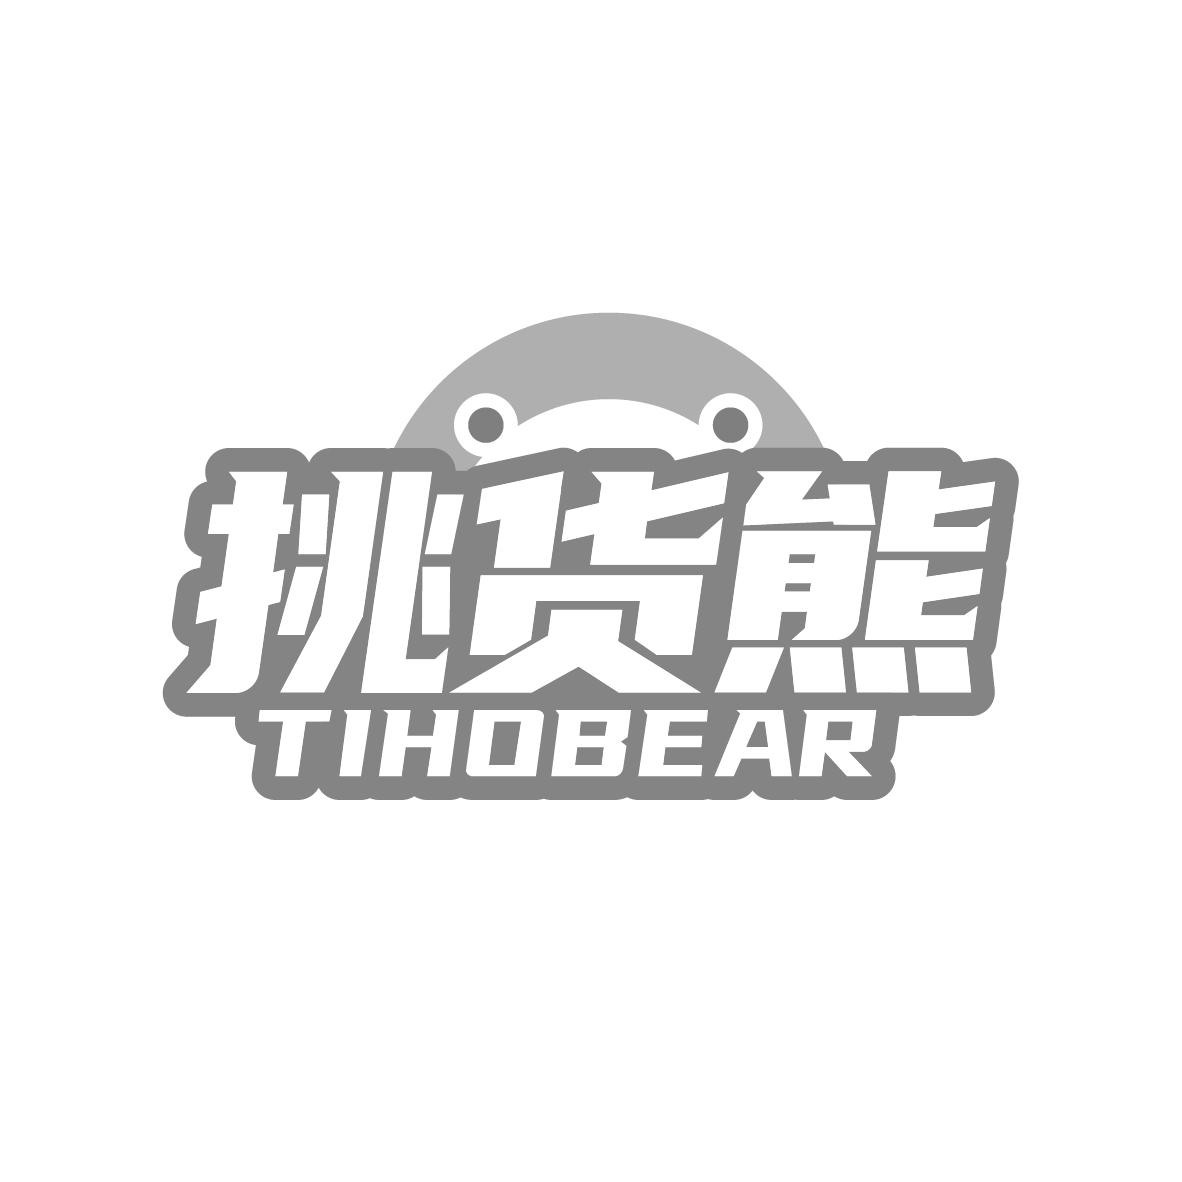 转让商标-挑货熊  TIHOBEAR